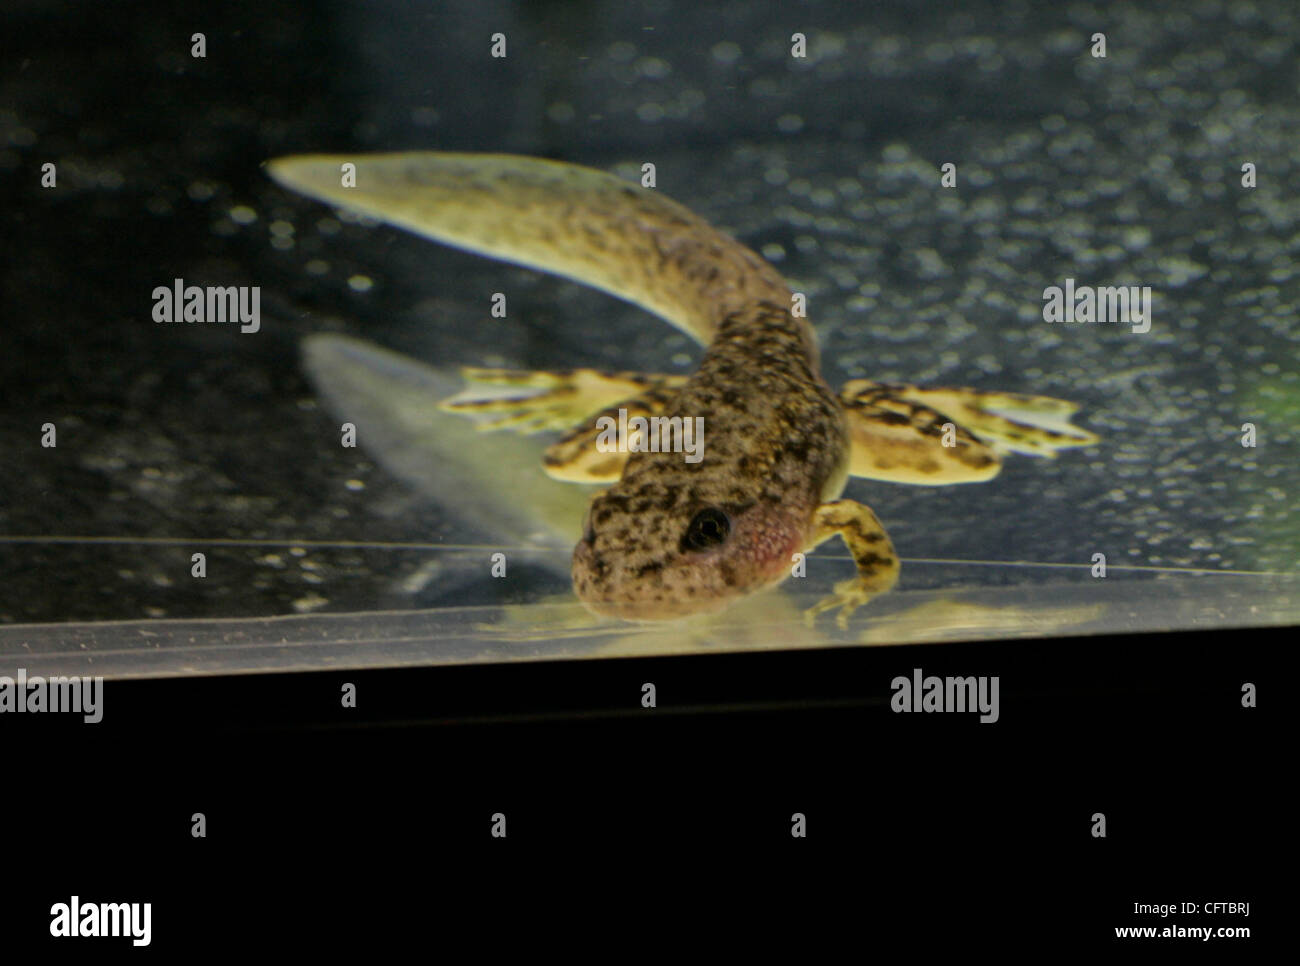 2 gennaio 2007 , San Diego,- Herpetologist JEFF LEMM, che lavora presso il San Diego Zoo Beckman Center presso il Wild Animal Park, con in pericolo giallo Rana zampe di girini e rane che hanno sollevato in laboratorio. Un morphing tadpole appoggiato sul fondo di uno dei serbatoi presso il centro di ricerca Foto Stock